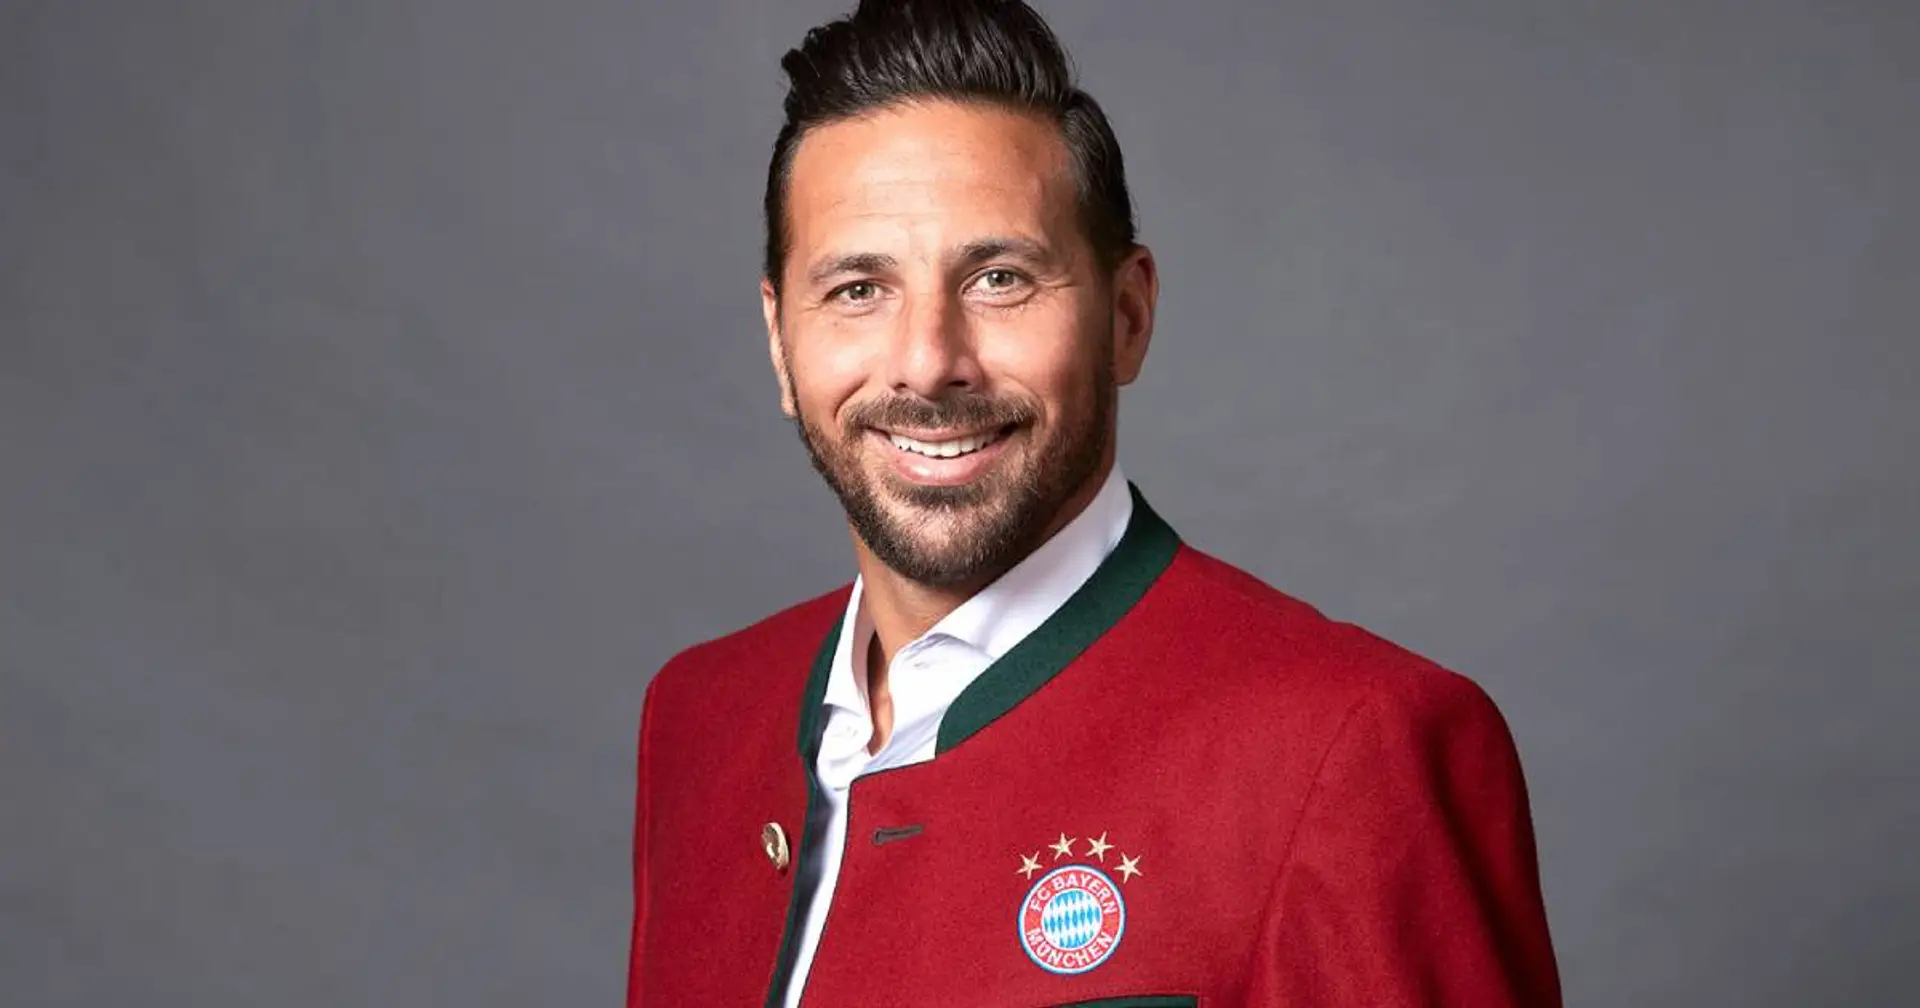 Pizarro nennt den Spieler aus dem aktuellen Bayern-Kader, von dem er besonders begeistert ist